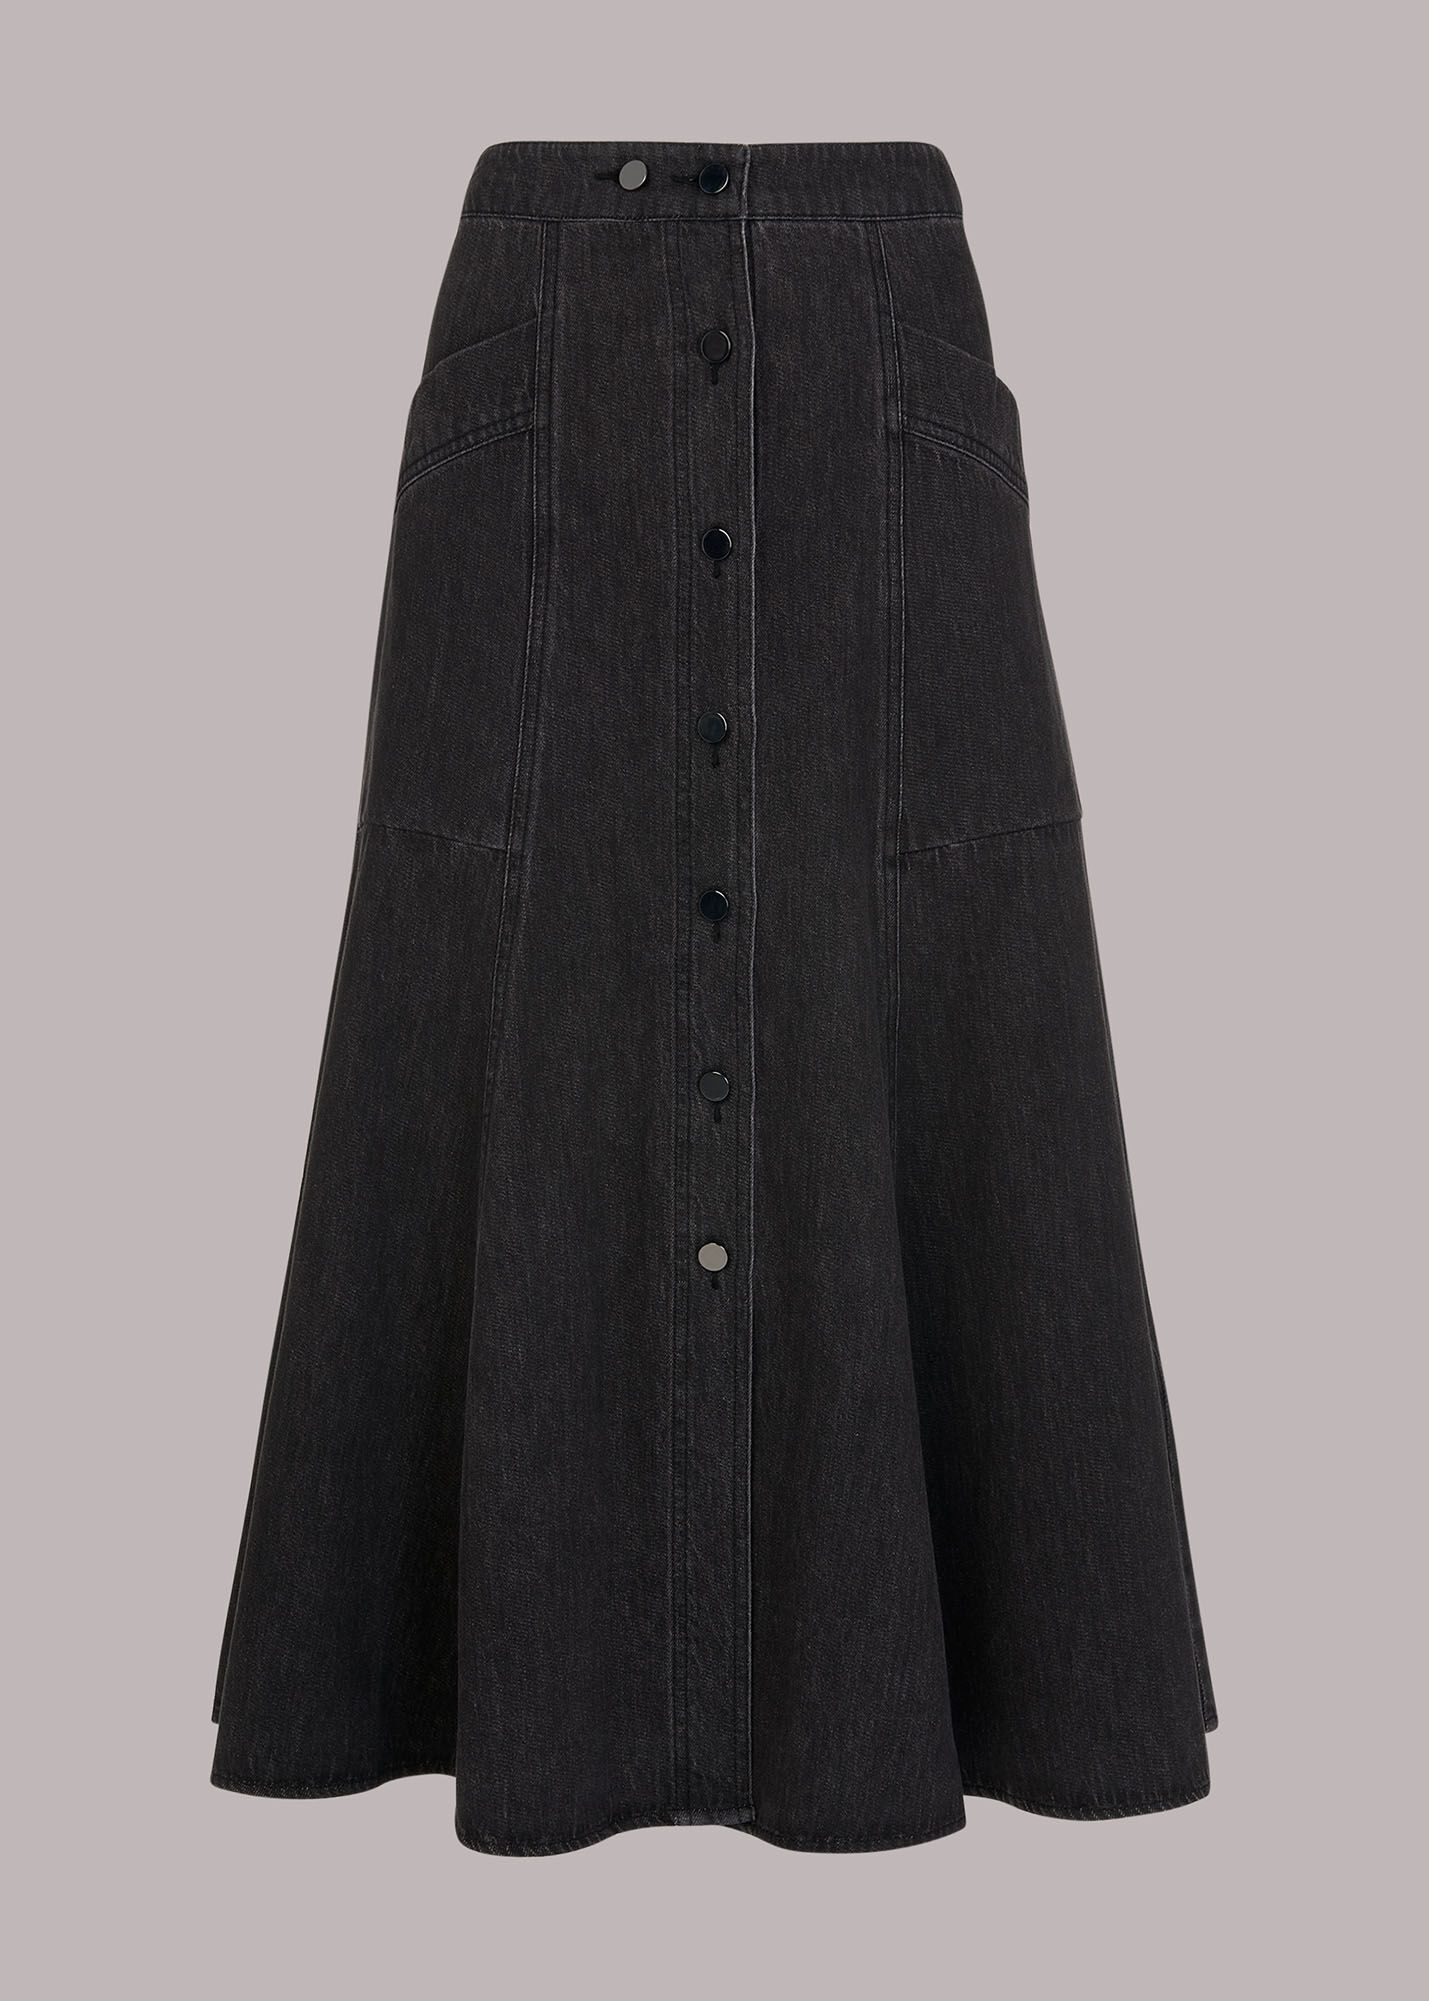 Black Julia Flare Denim Skirt | WHISTLES |